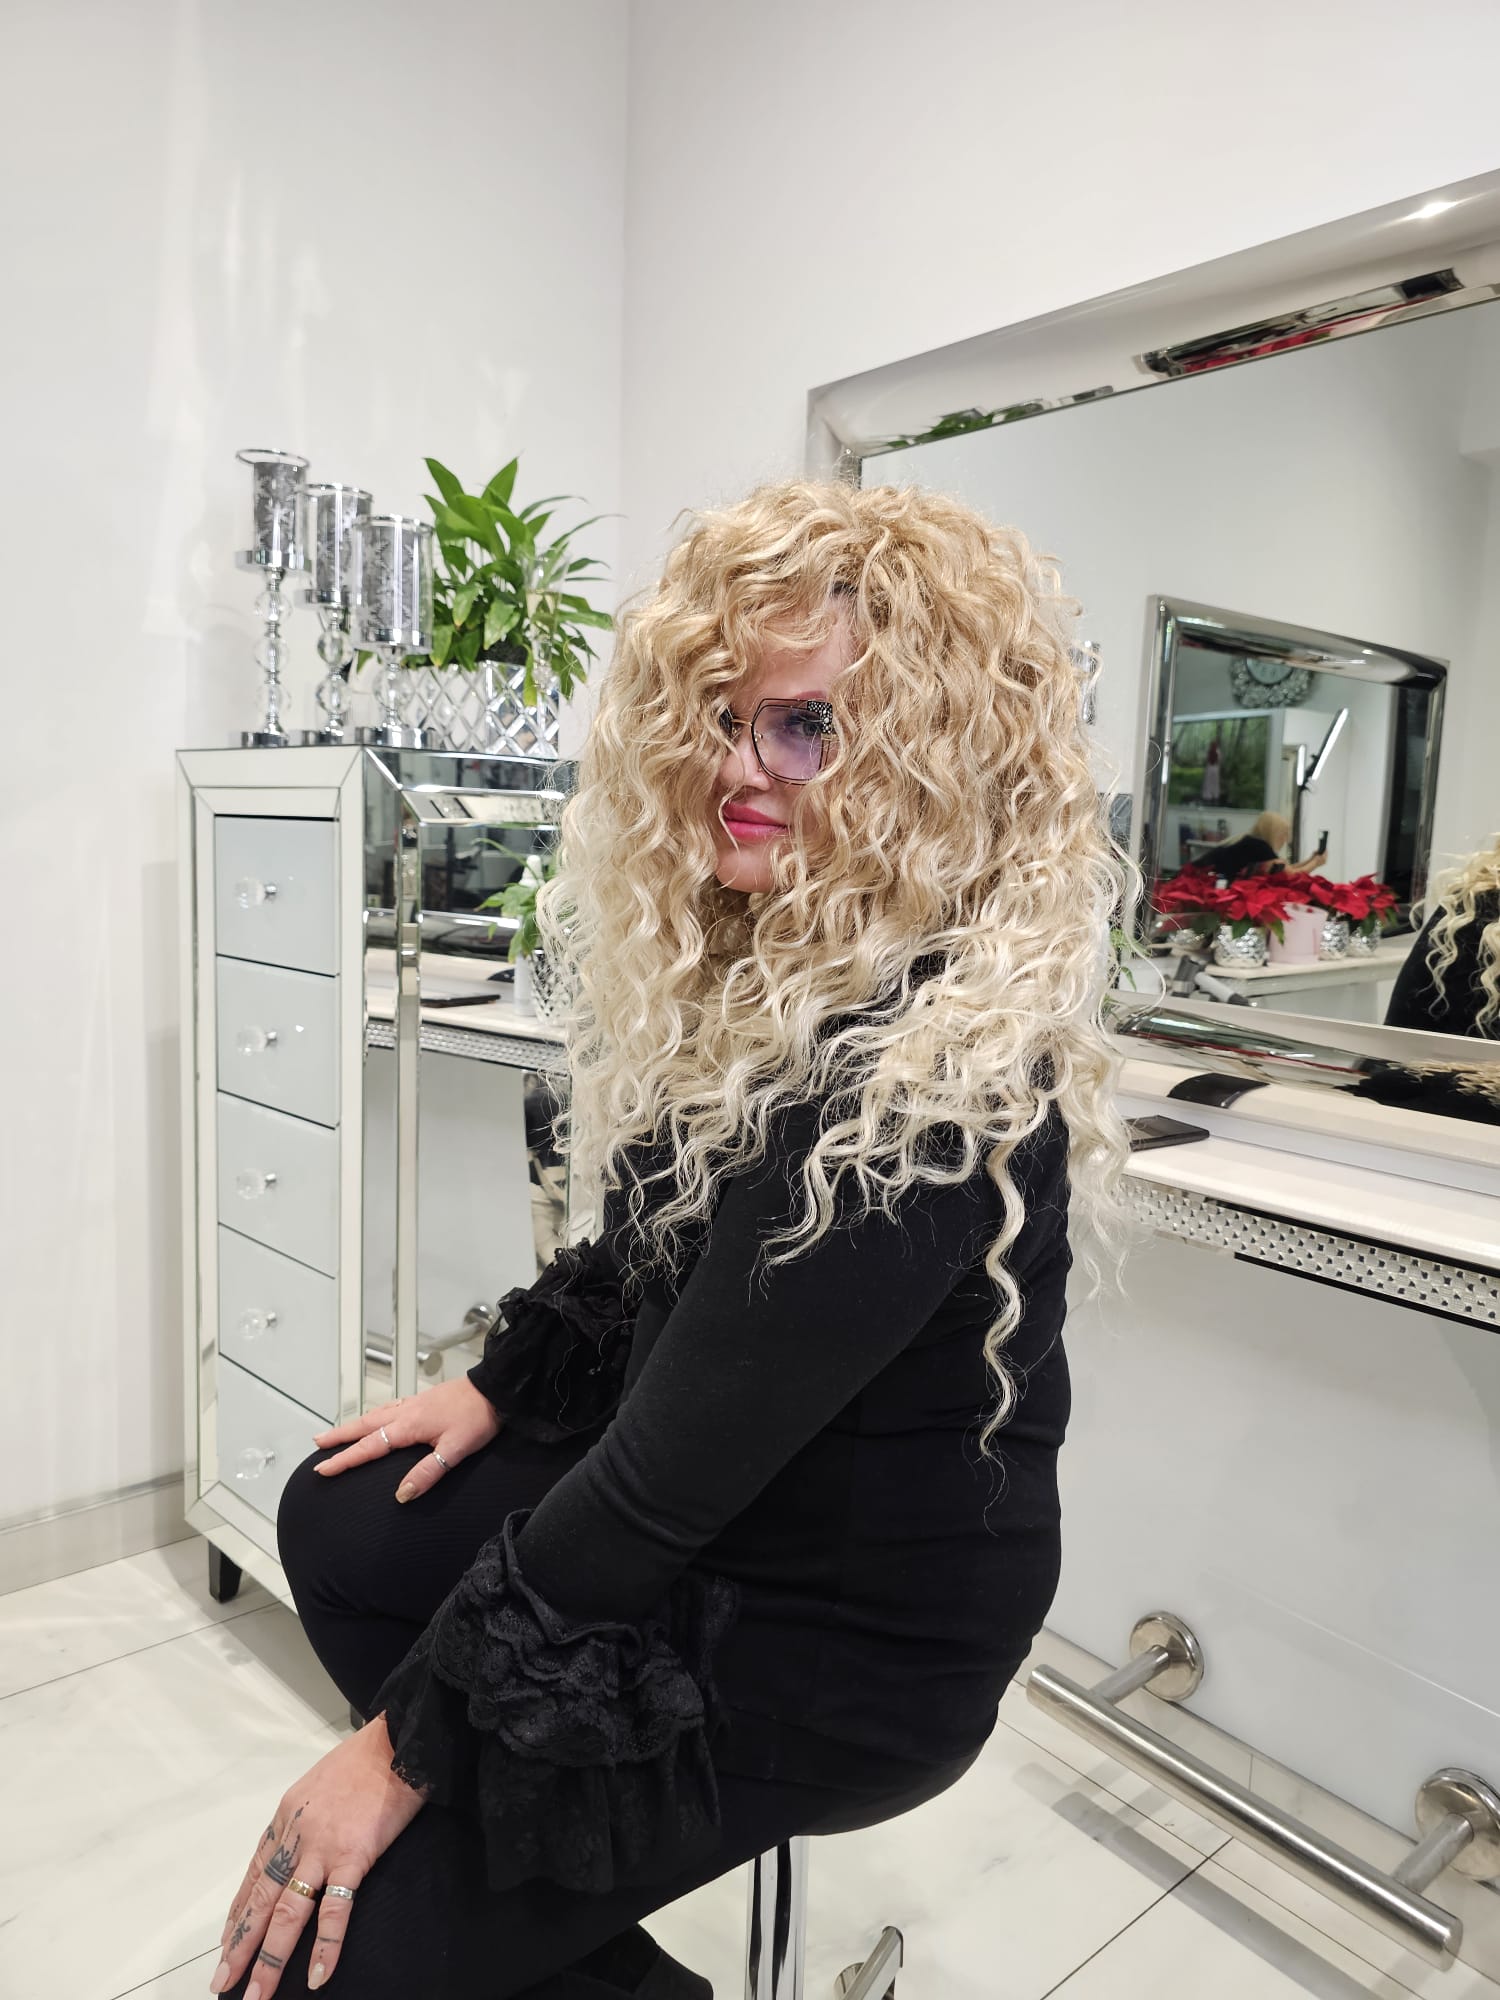 Magdalena Motyka – La Coiffure: Zdjęcie metamorfozy włosów stworzonej przez Mistrza Fryzjerstwa, ukazujące unikalną kreatywność salonu w Płocku.